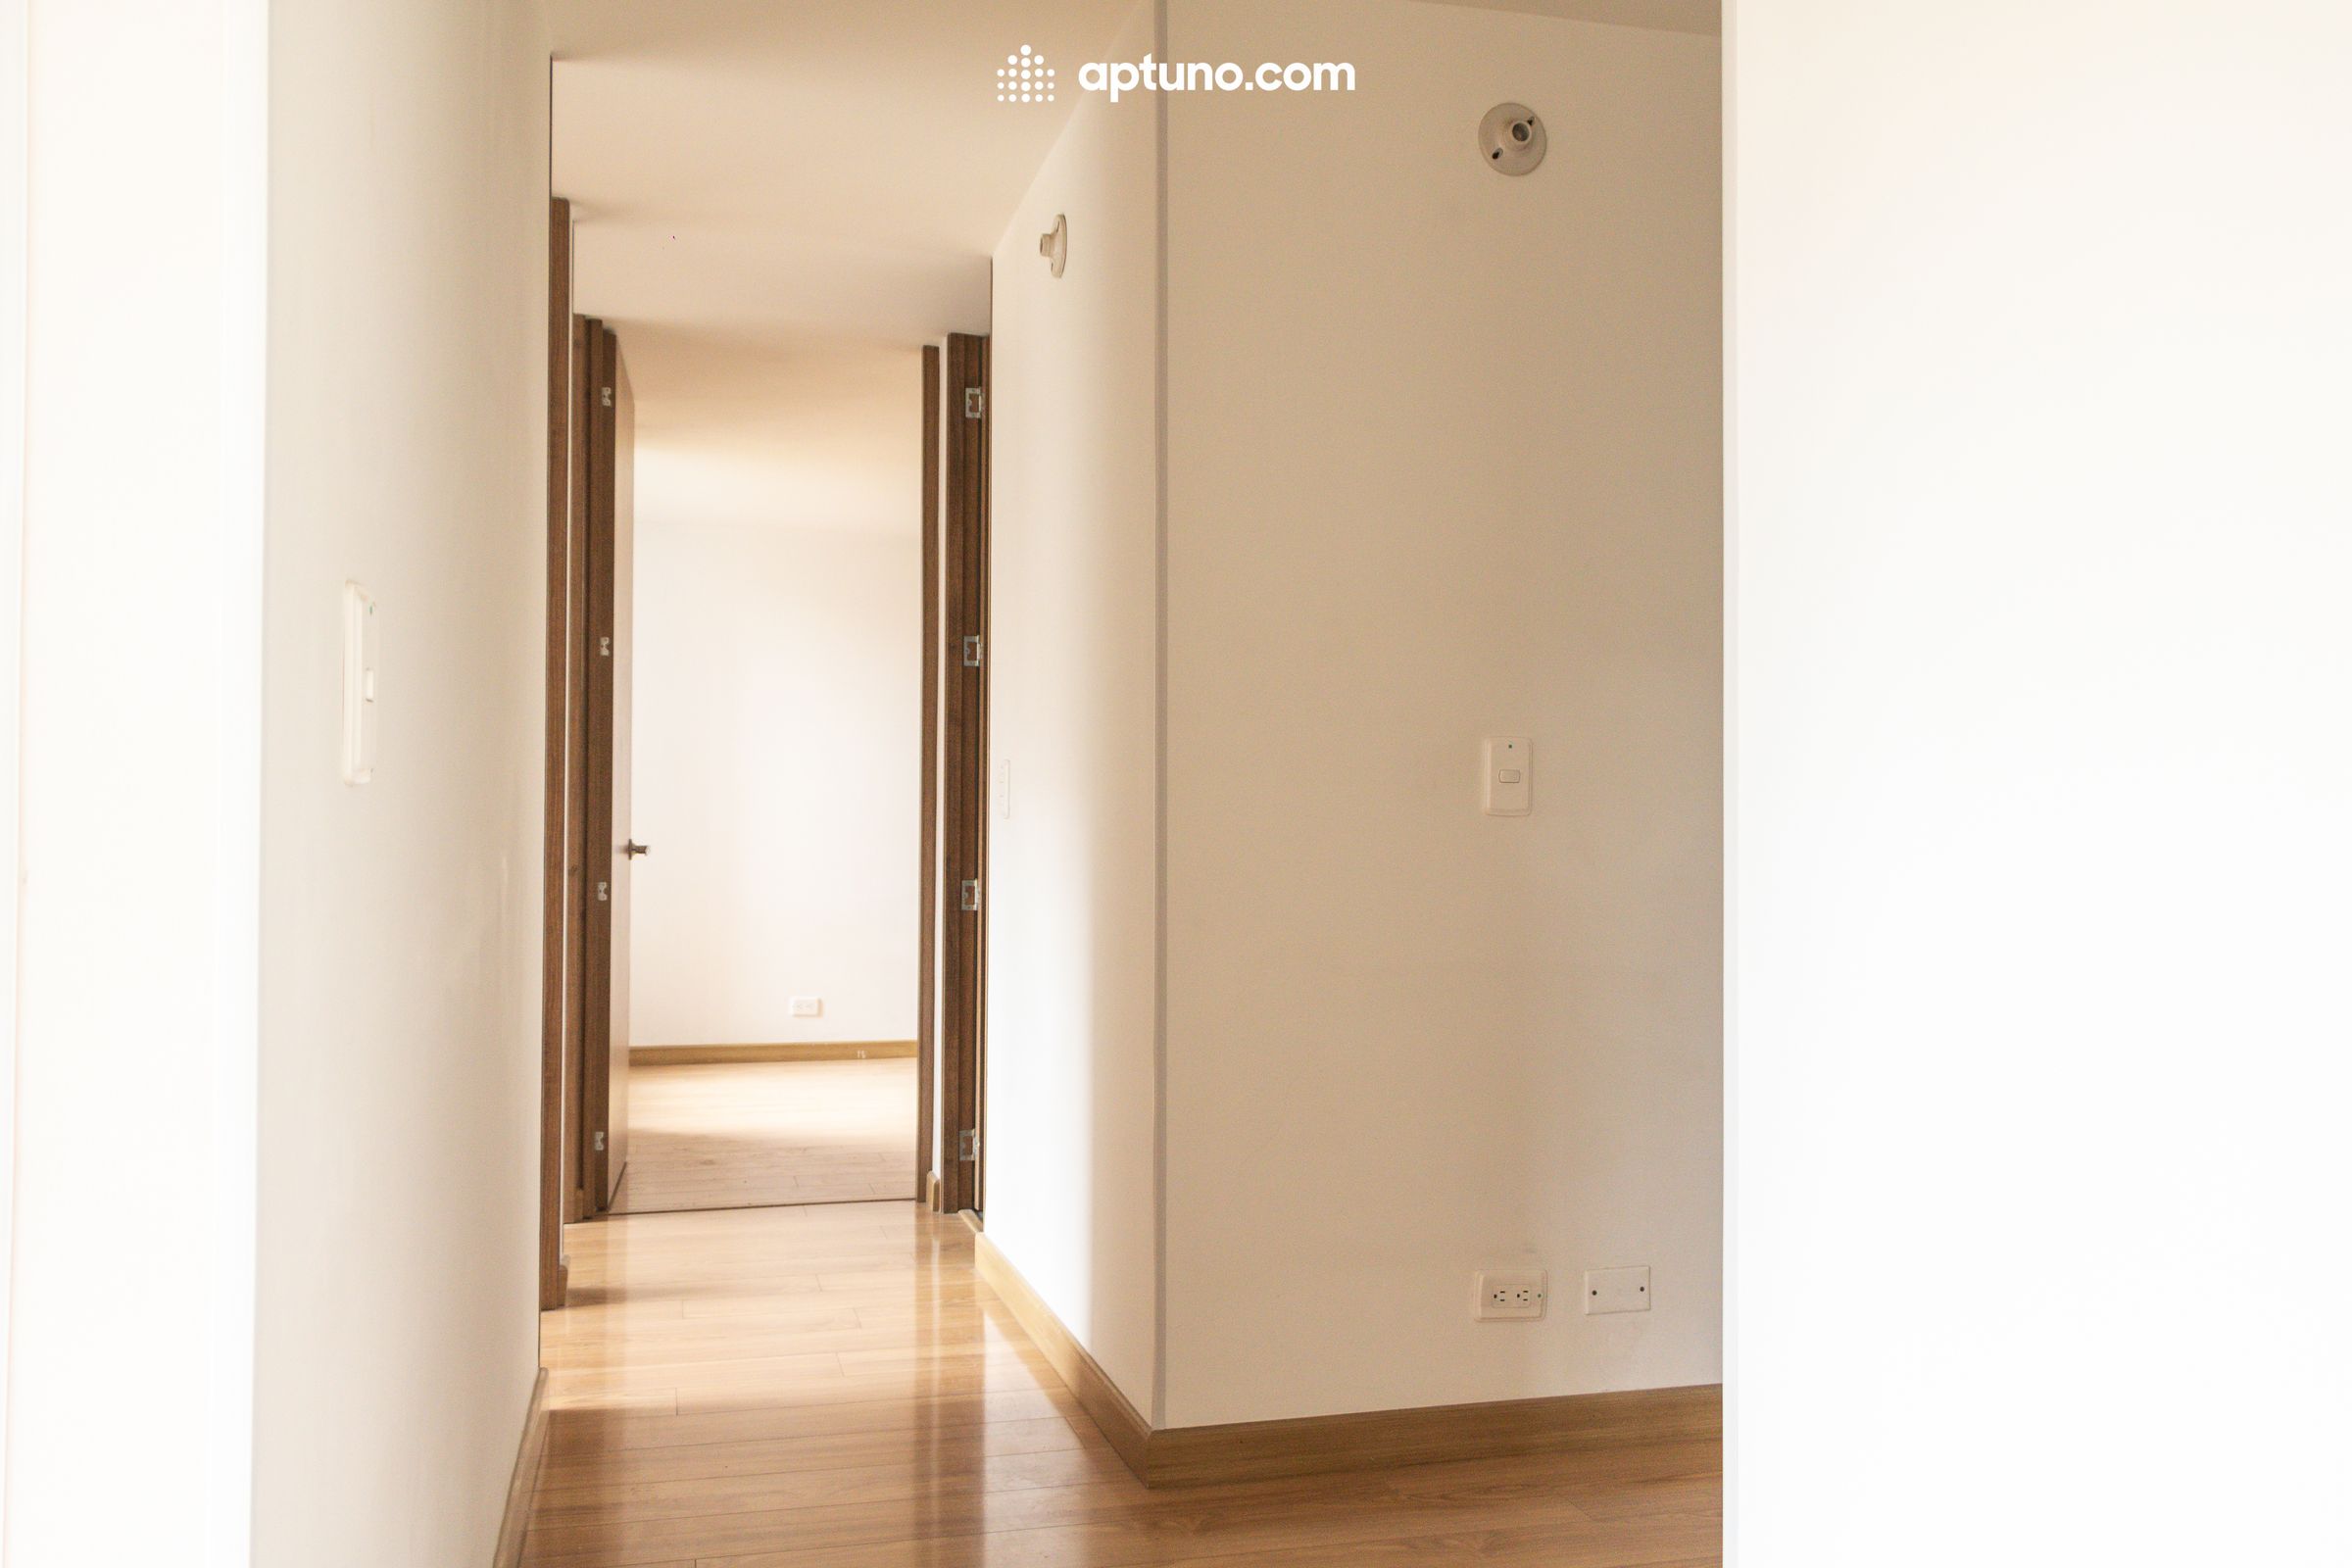 Apartamento en arriendo Madrid 61 m² - $ 1.200.000,00